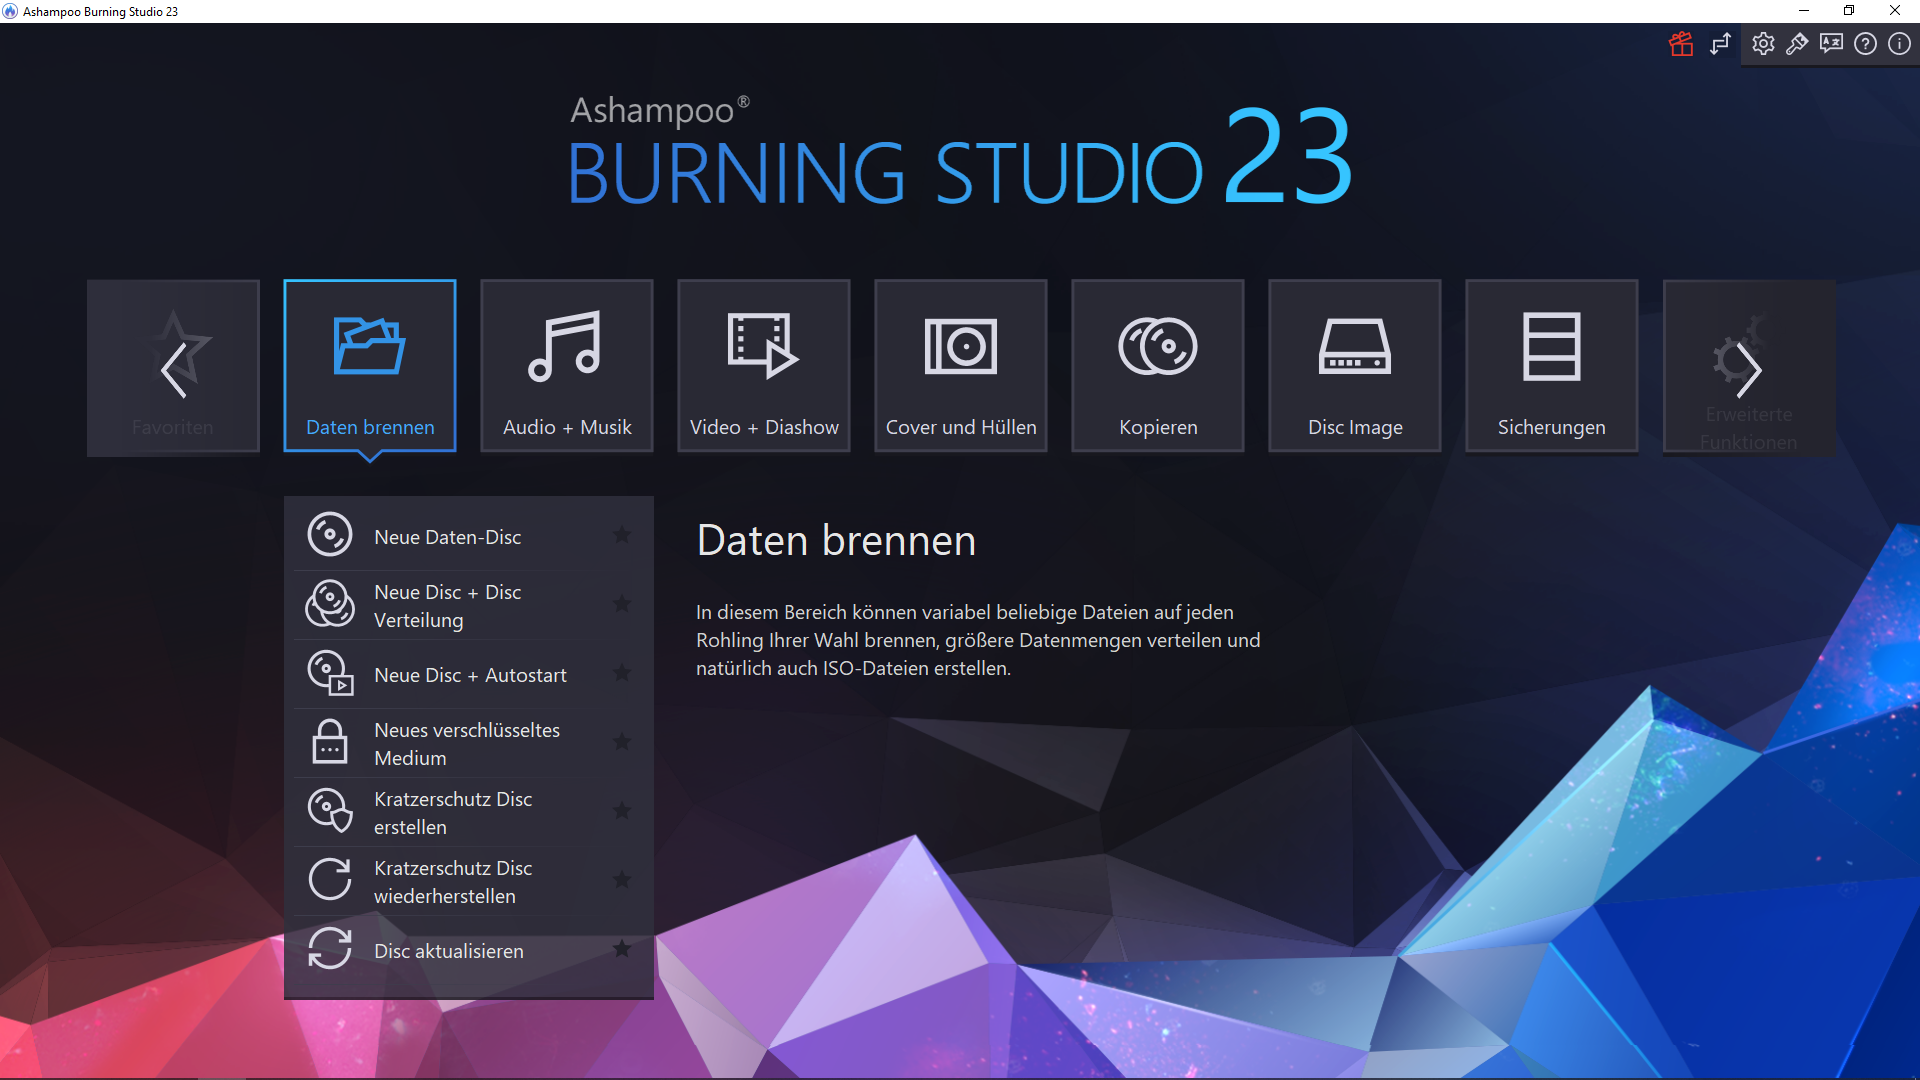 Ashampoo - Burning Studio 23 - Start - dark